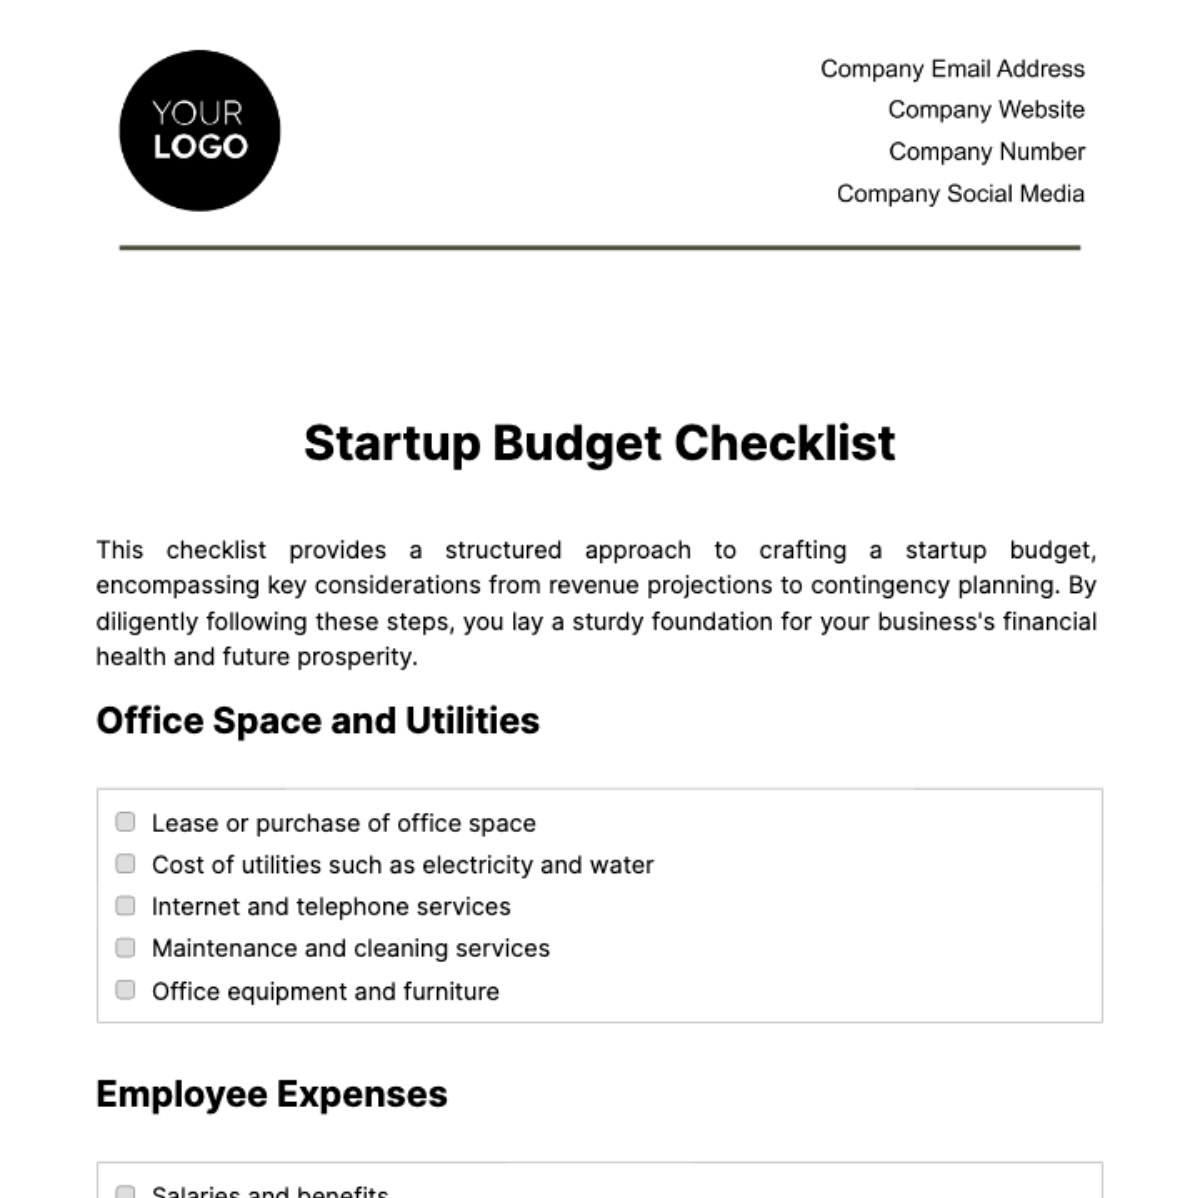 Startup Budget Checklist Template